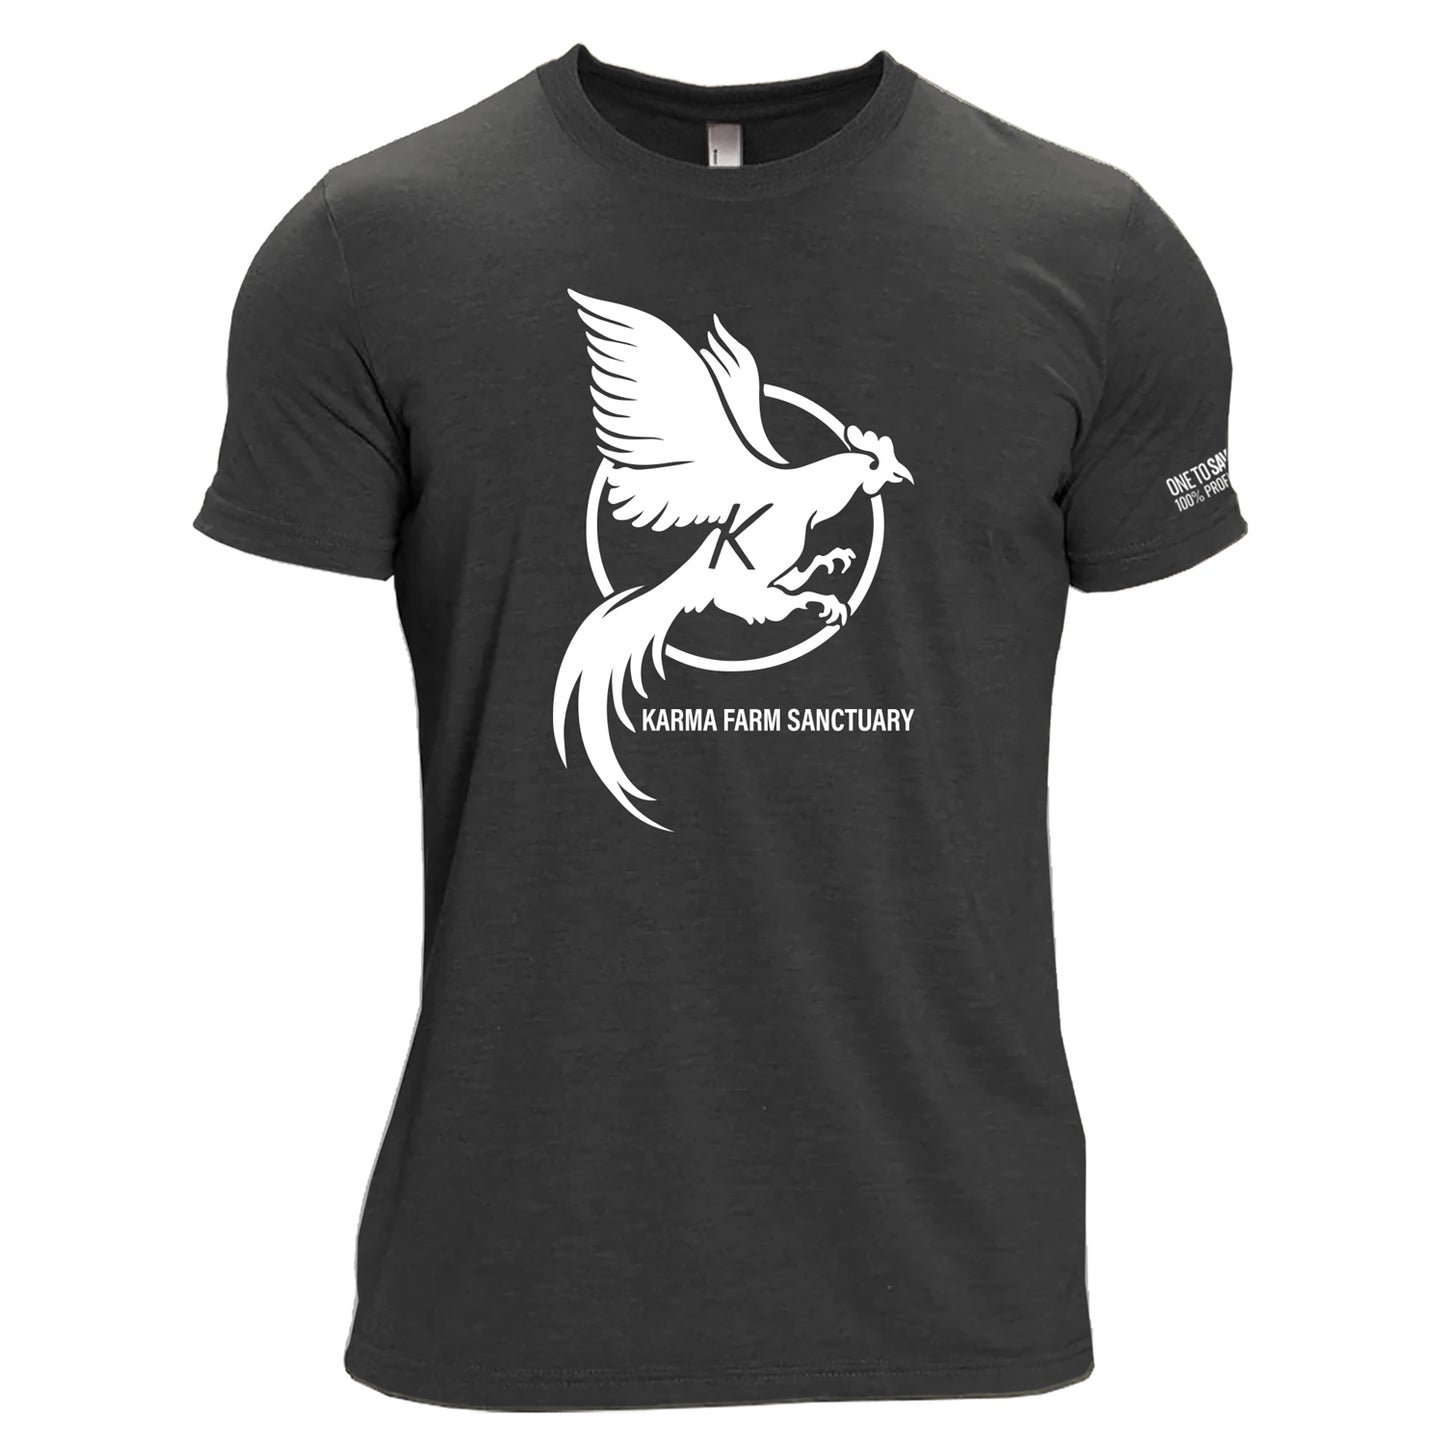 Karma Farm Sanctuary Unisex Tri-Blend T-Shirt in Black - 100% Profit to Karma Farm Sanctuary